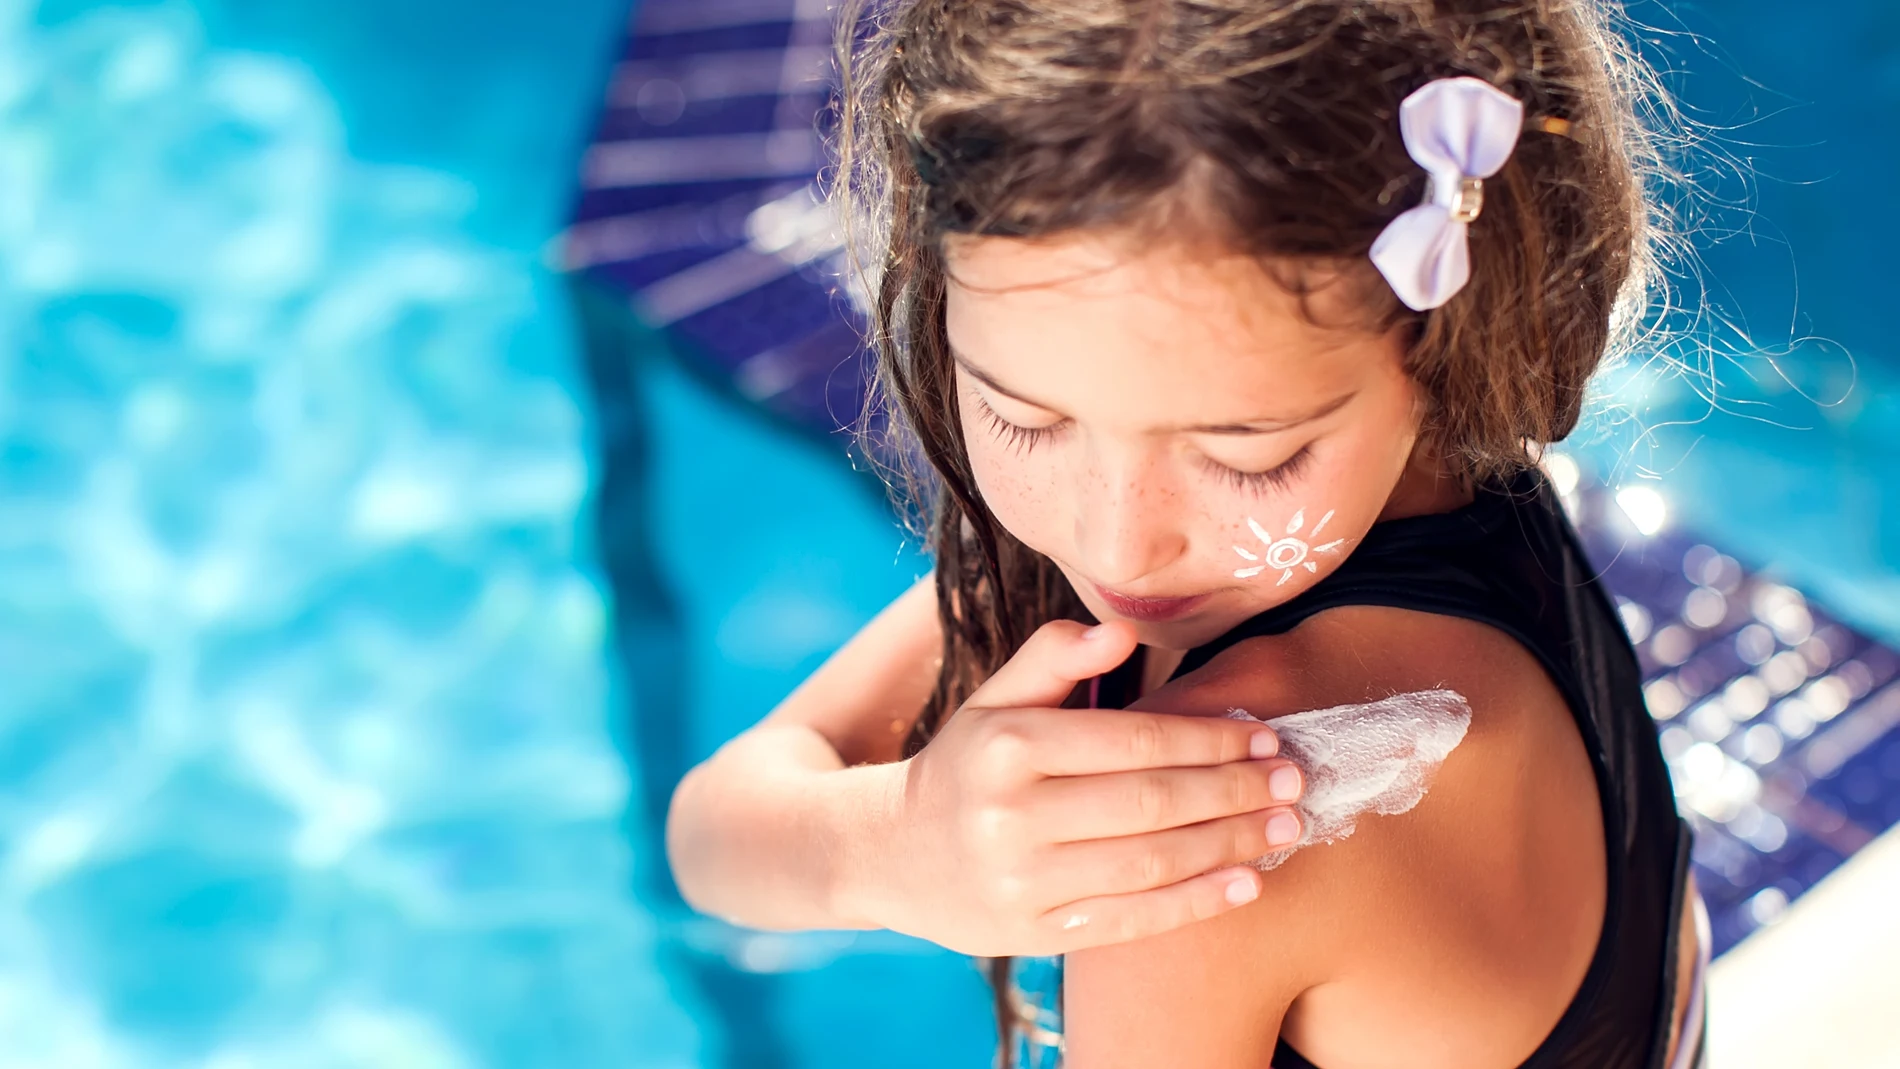 El cuidado de la piel en verano resulta imprescindible en los niños